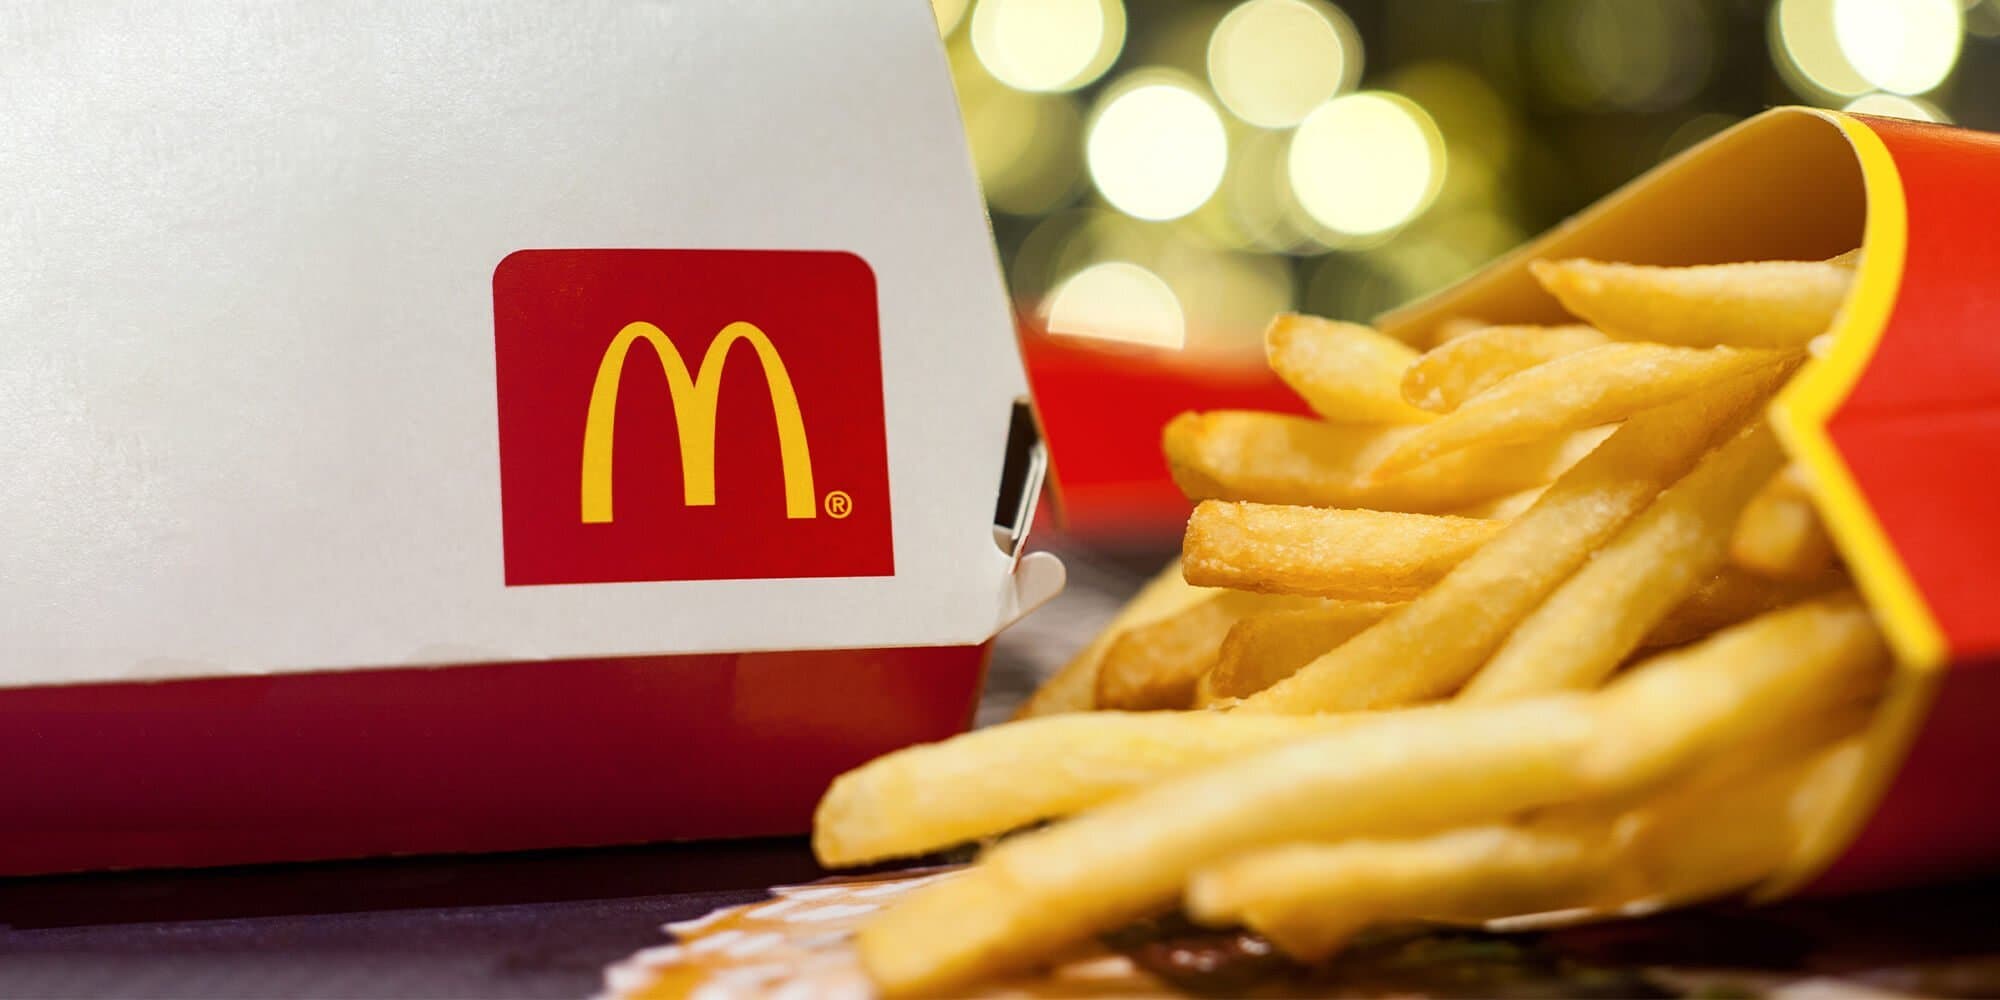 McDonald's Aktienanalyse: Eine ungewöhnliche Geschichte über Immobilien und Digitalisierung